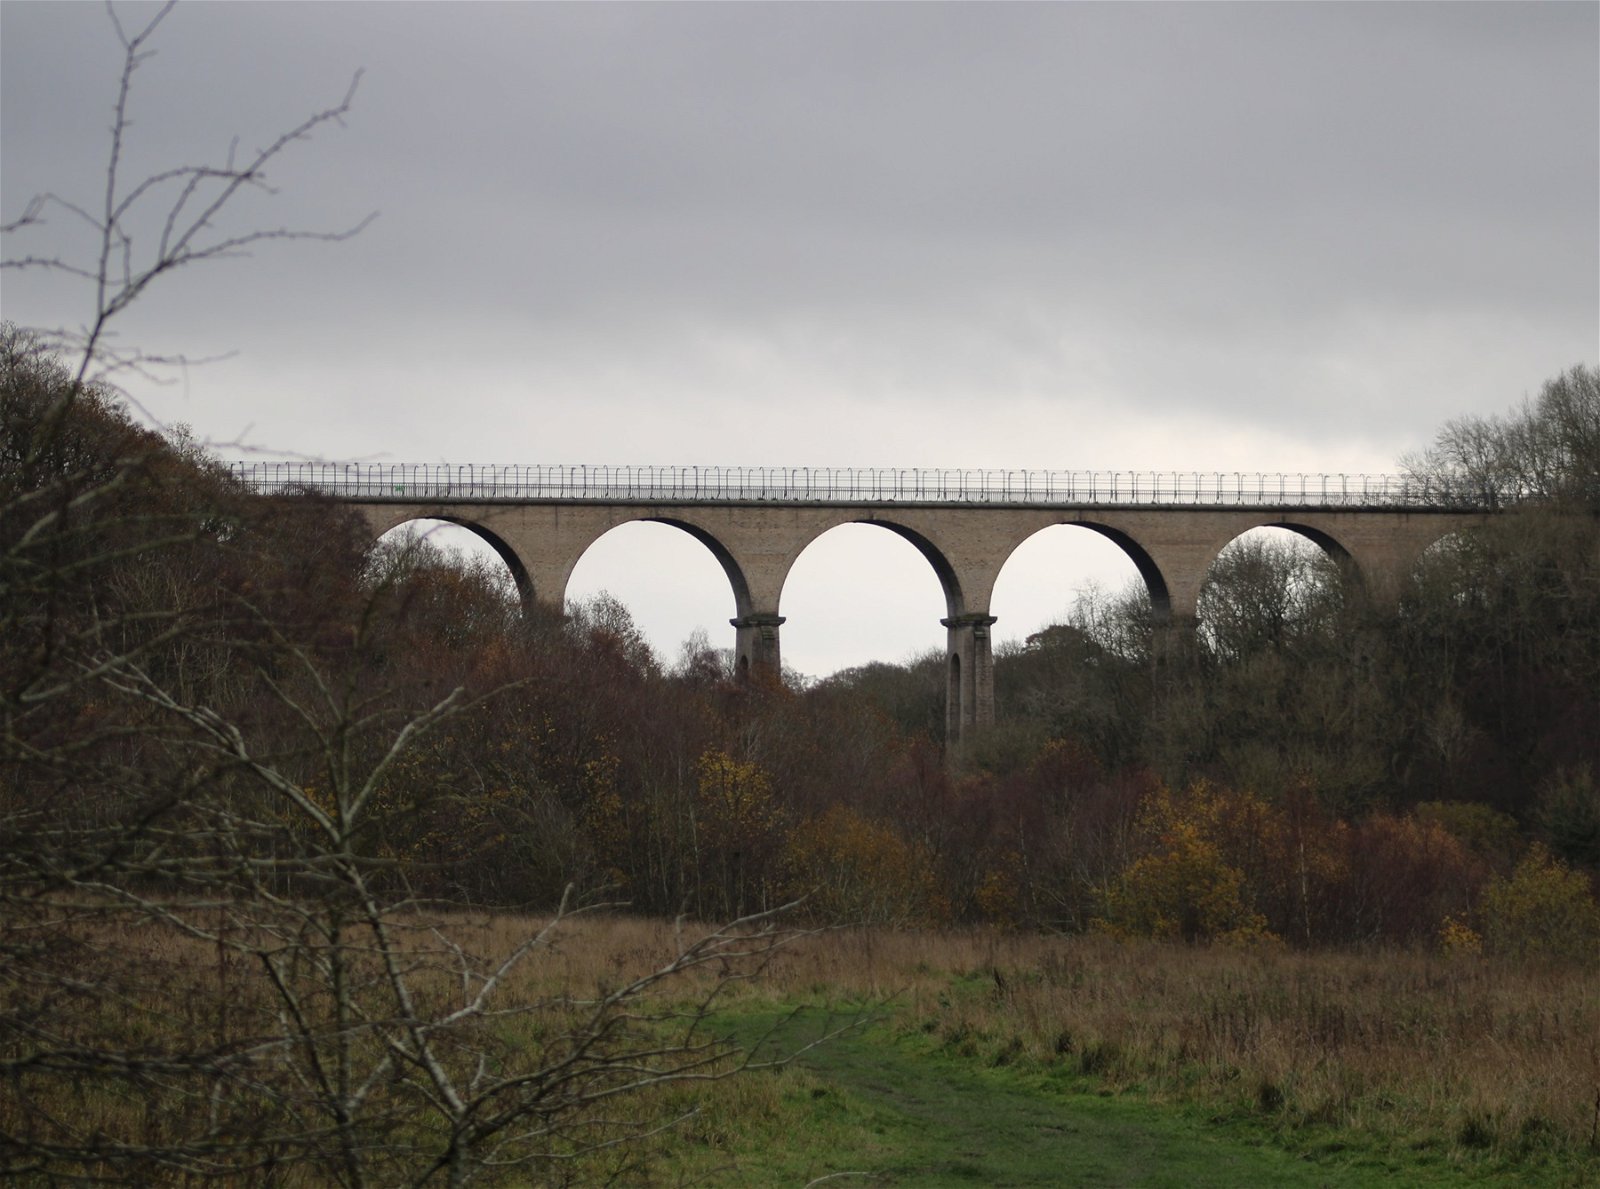 Hownsgill Viaduct